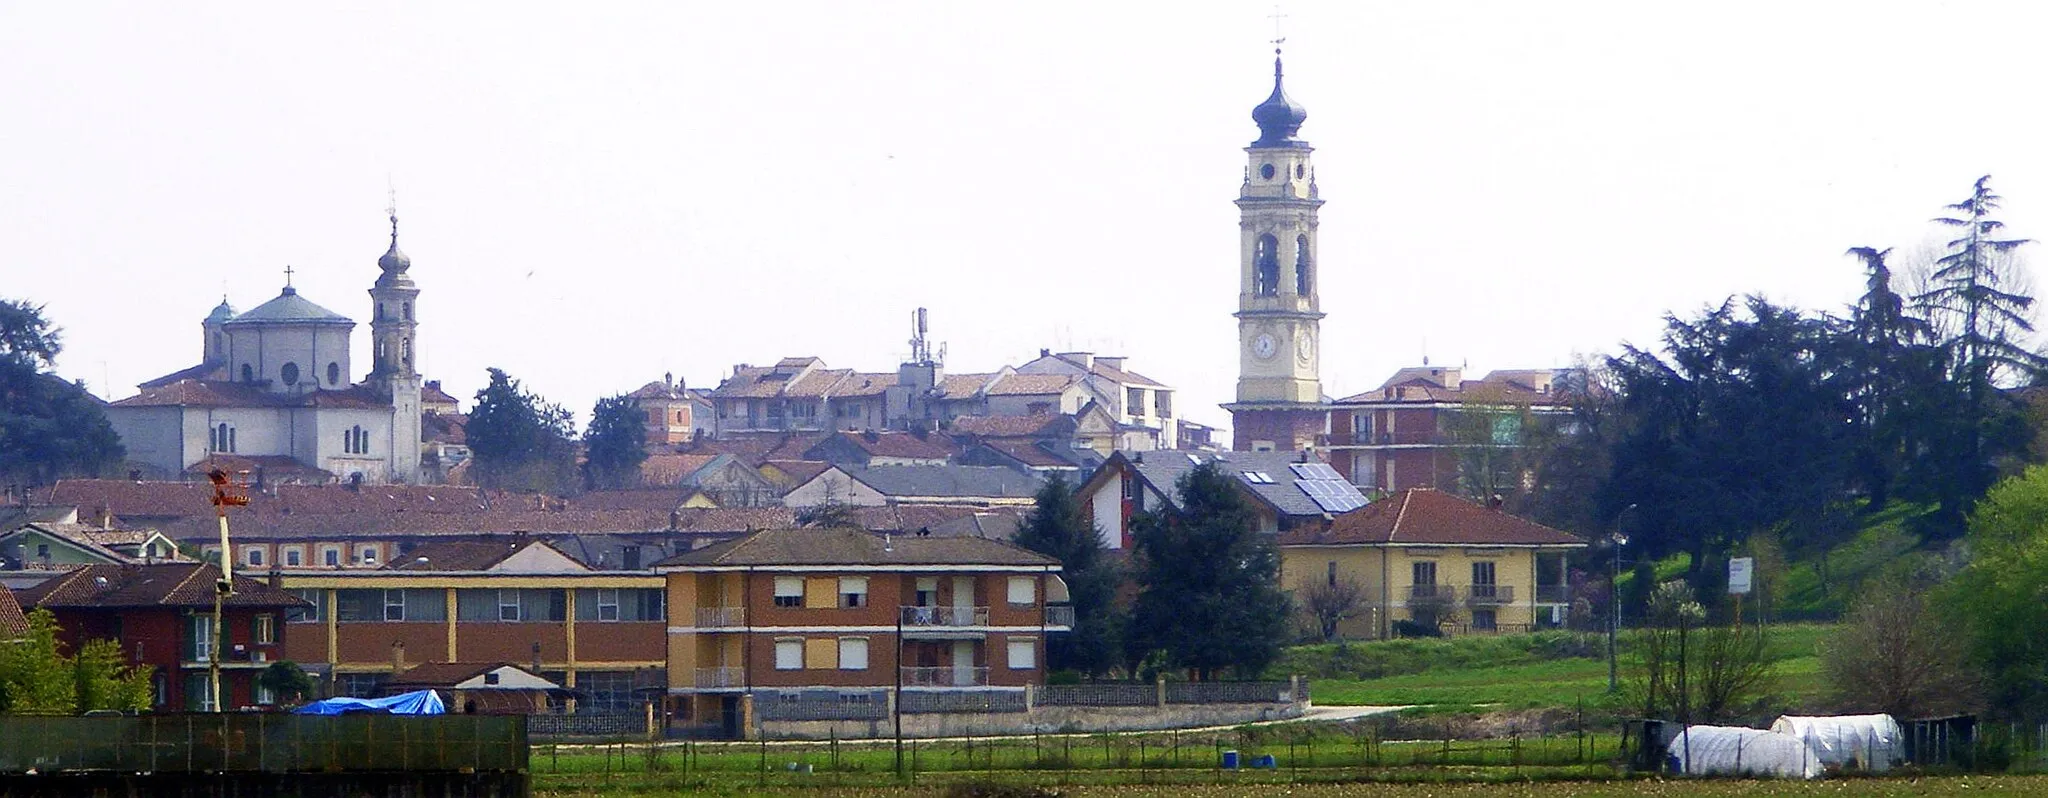 Imagen de Piemonte